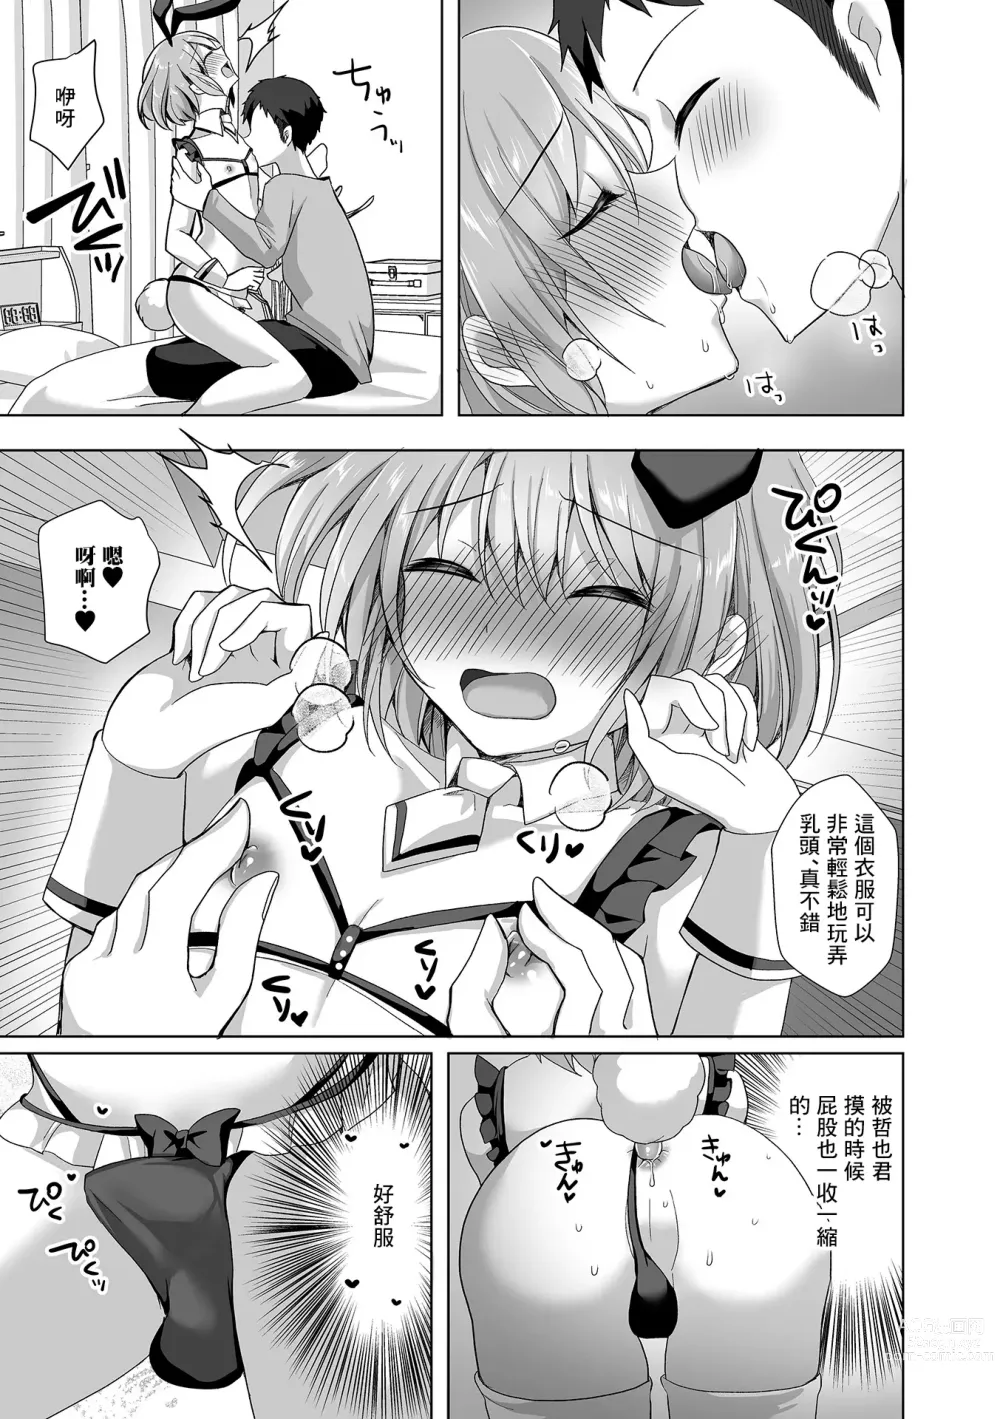 Page 7 of manga Kawaisugiru Ore no Koibito